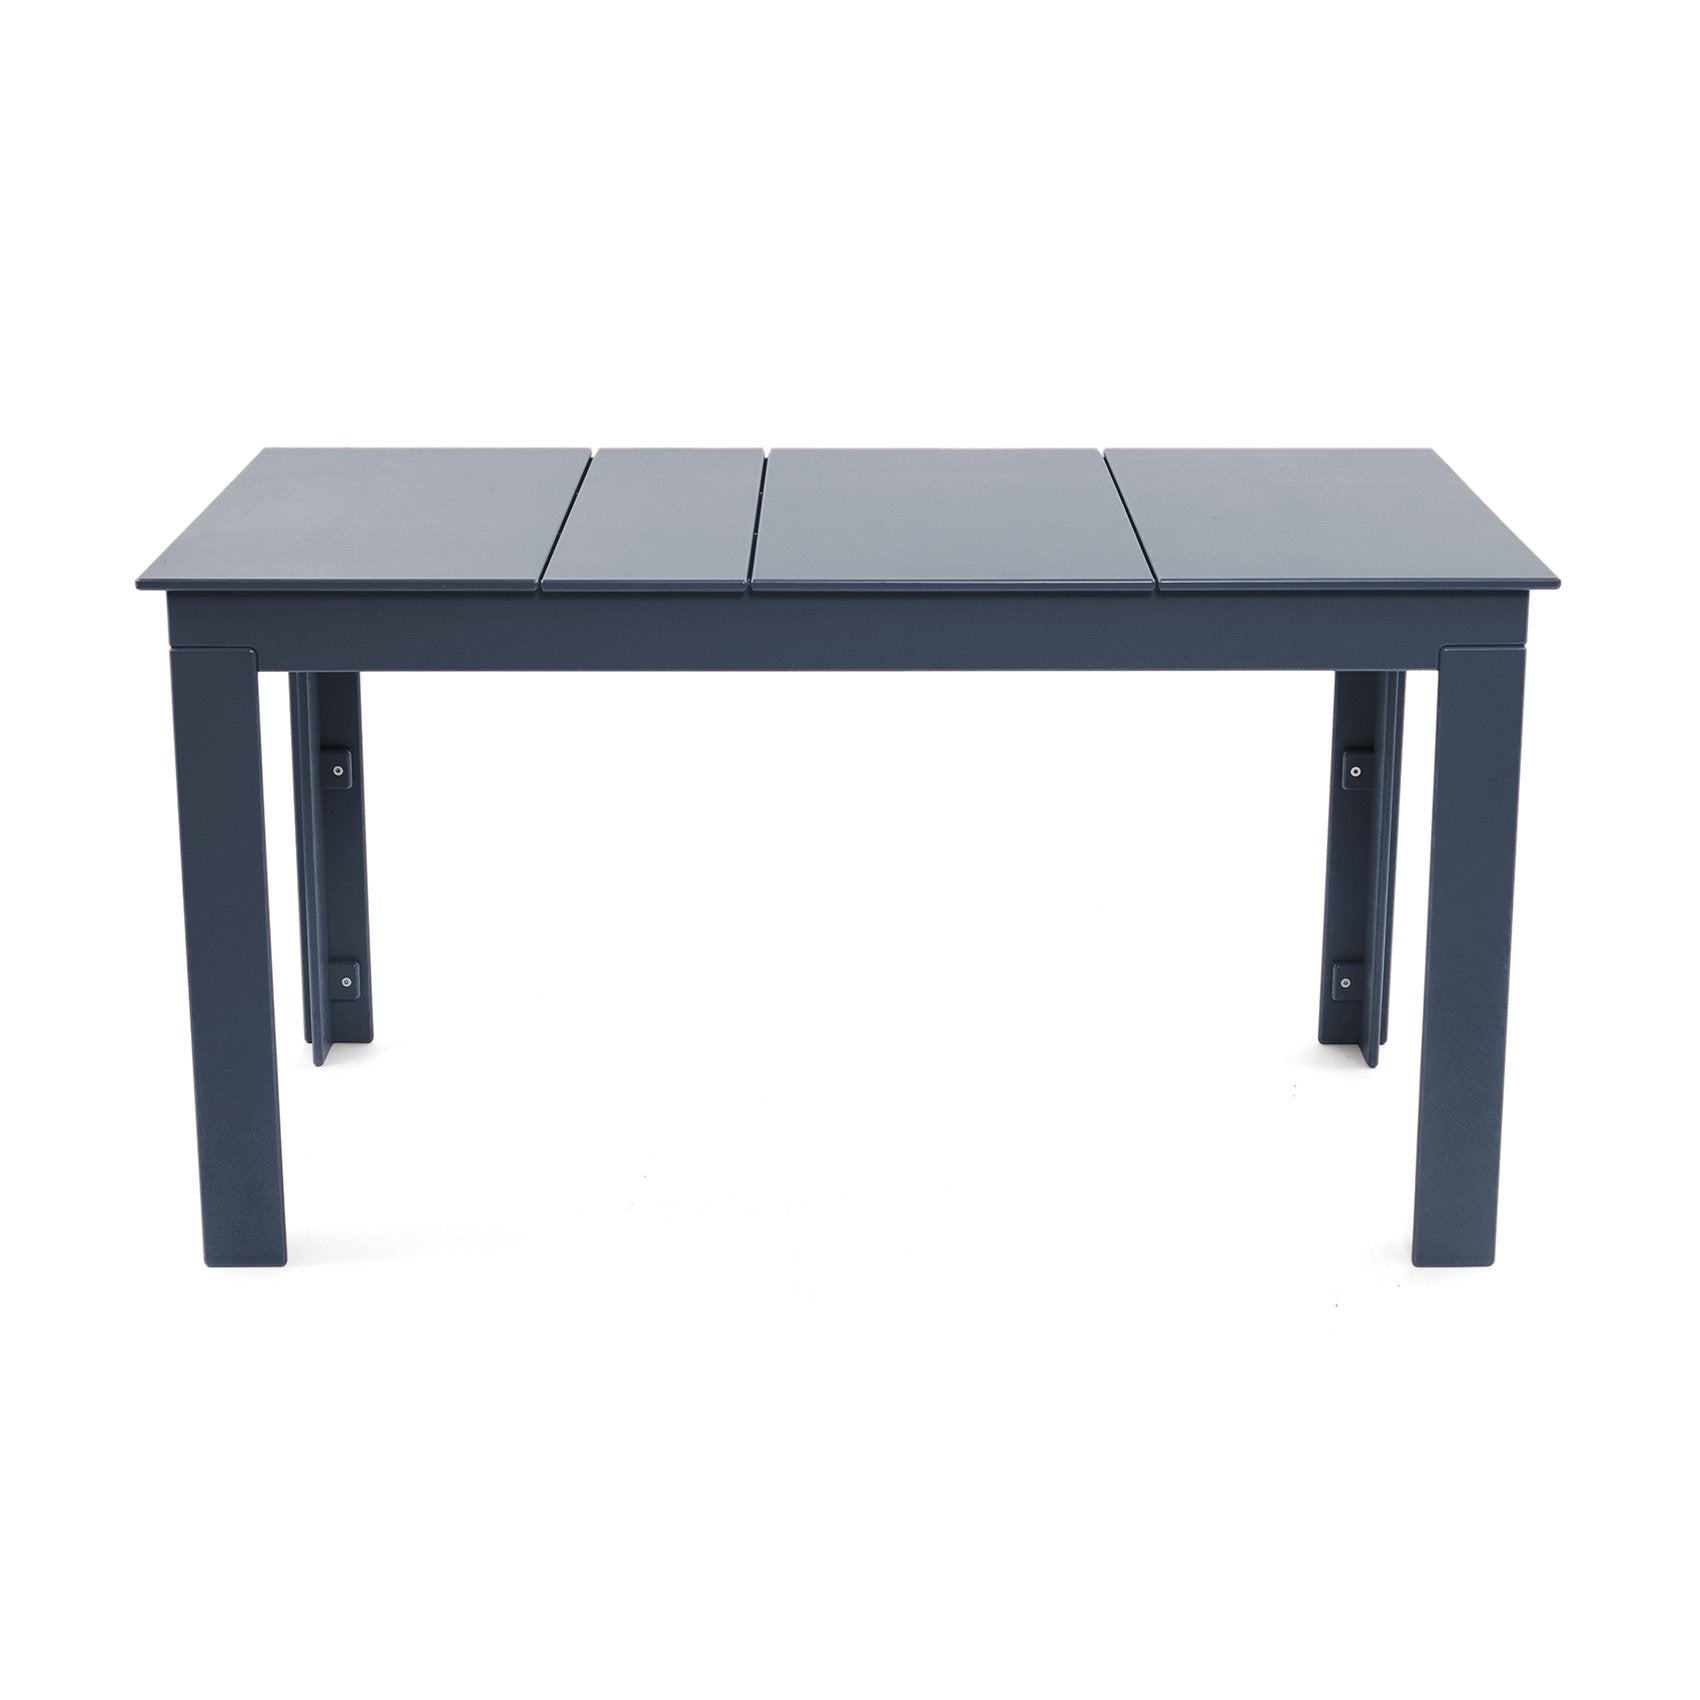 Table pique-nique - Table de Jardin - Wood Structure 